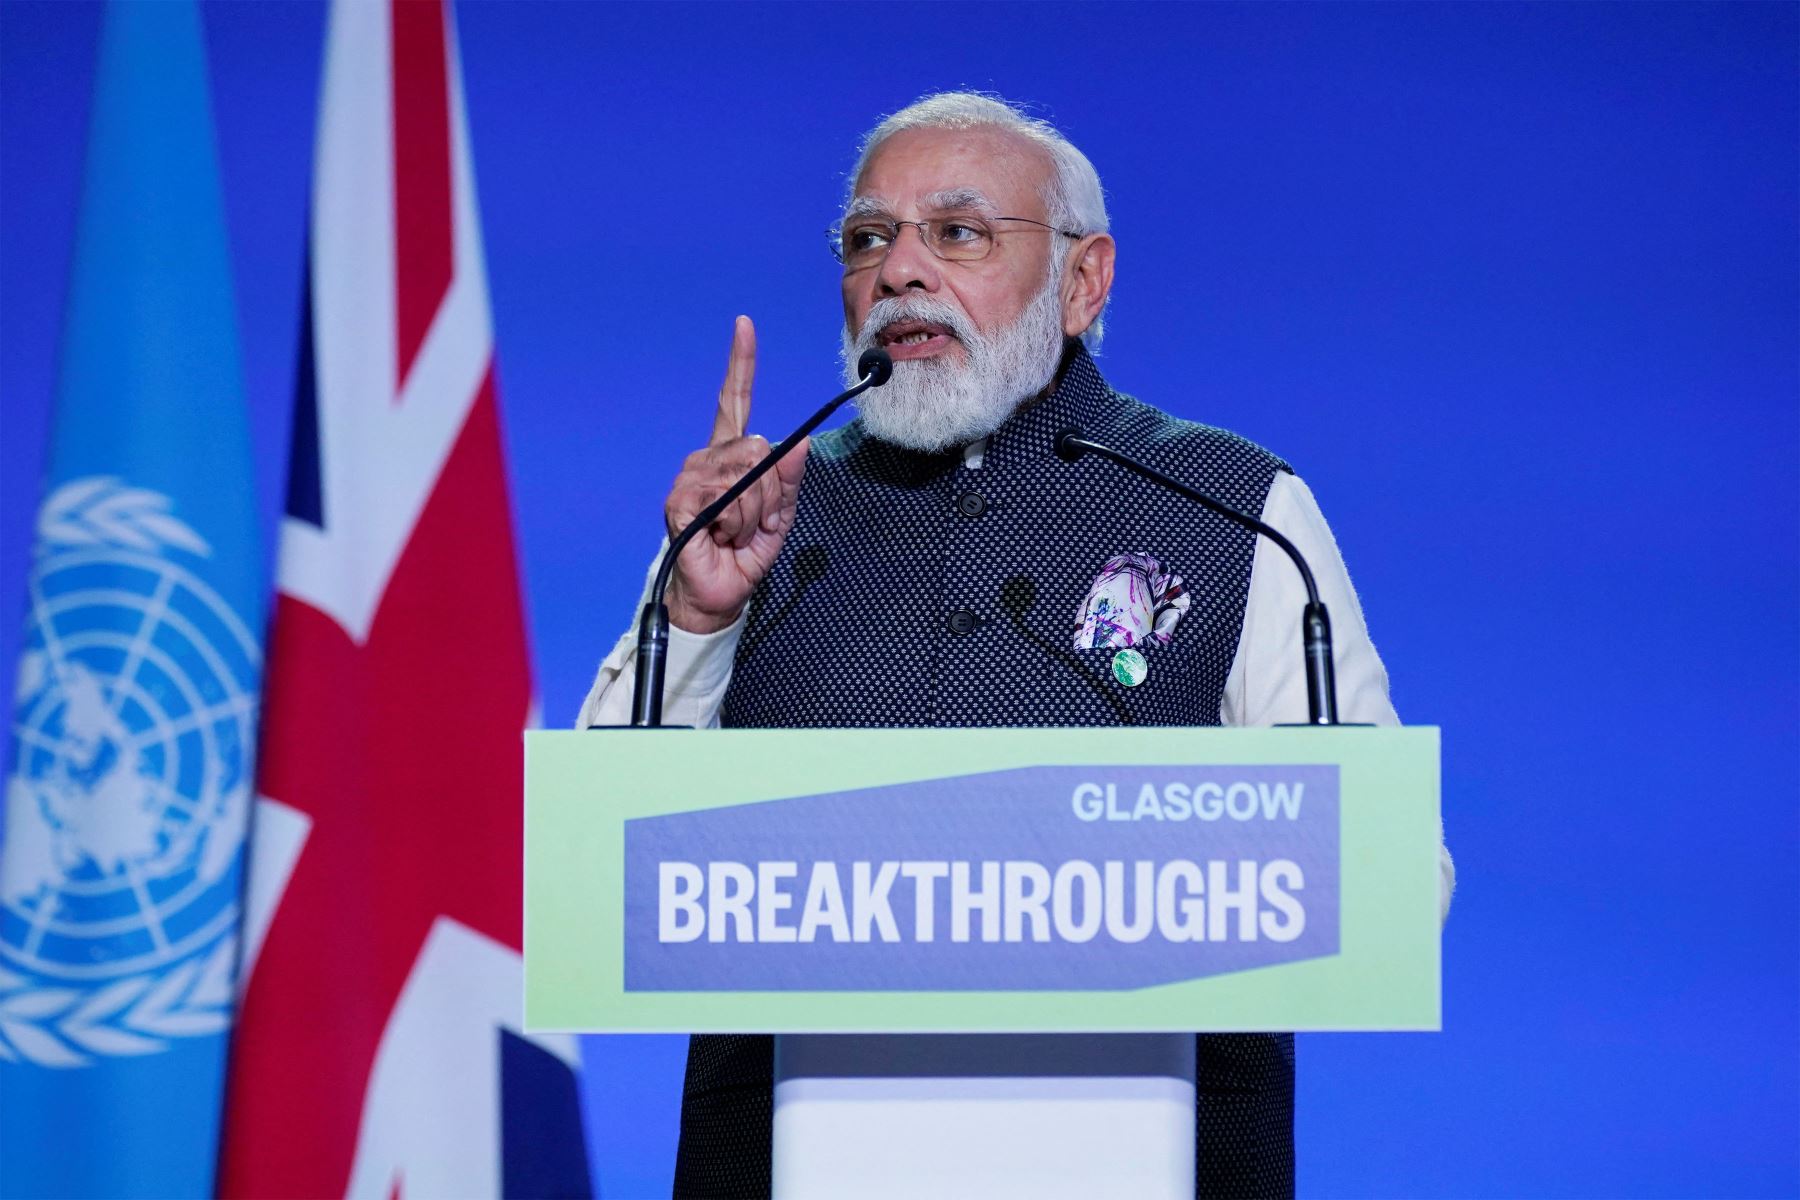 El primer ministro de la India, Narendra Modi, pronuncia un discurso en el escenario durante una reunión, como parte de la Cumbre de Líderes Mundiales de la Conferencia de las Naciones Unidas sobre el Cambio Climático COP26 en Glasgow, Escocia.
Foto: AFP